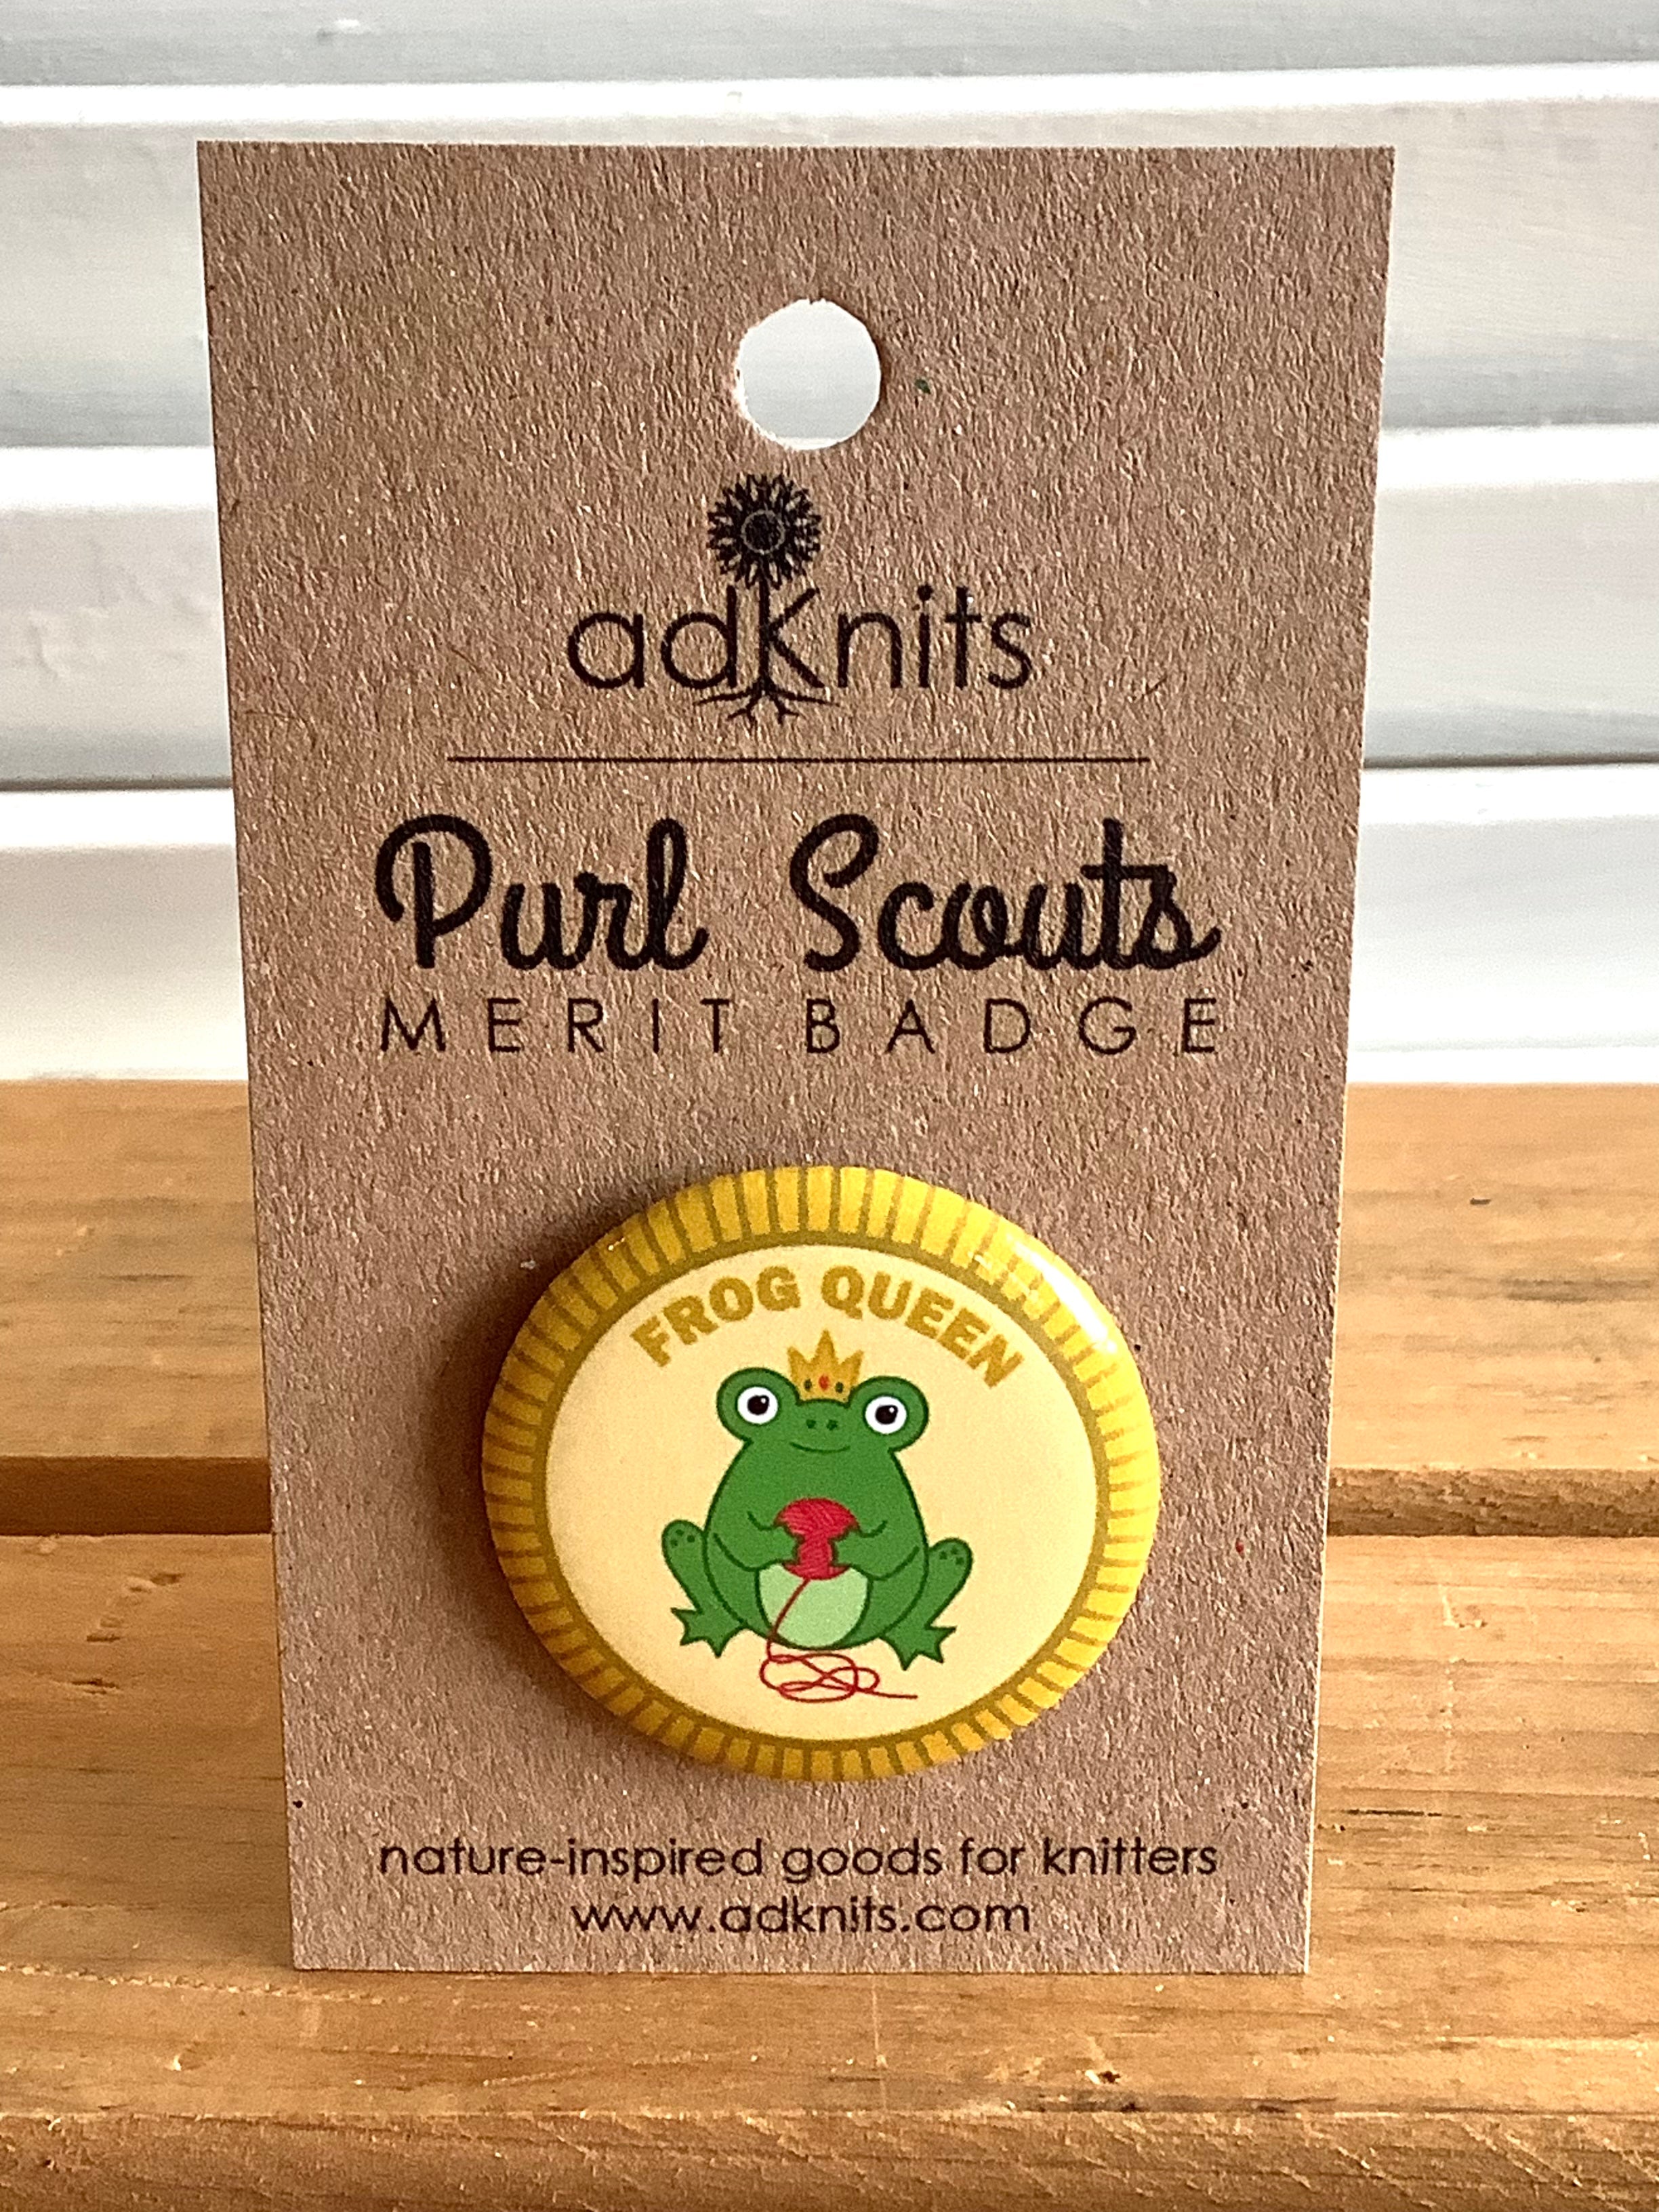 Frog Queen - Purl Scouts Merit Badge